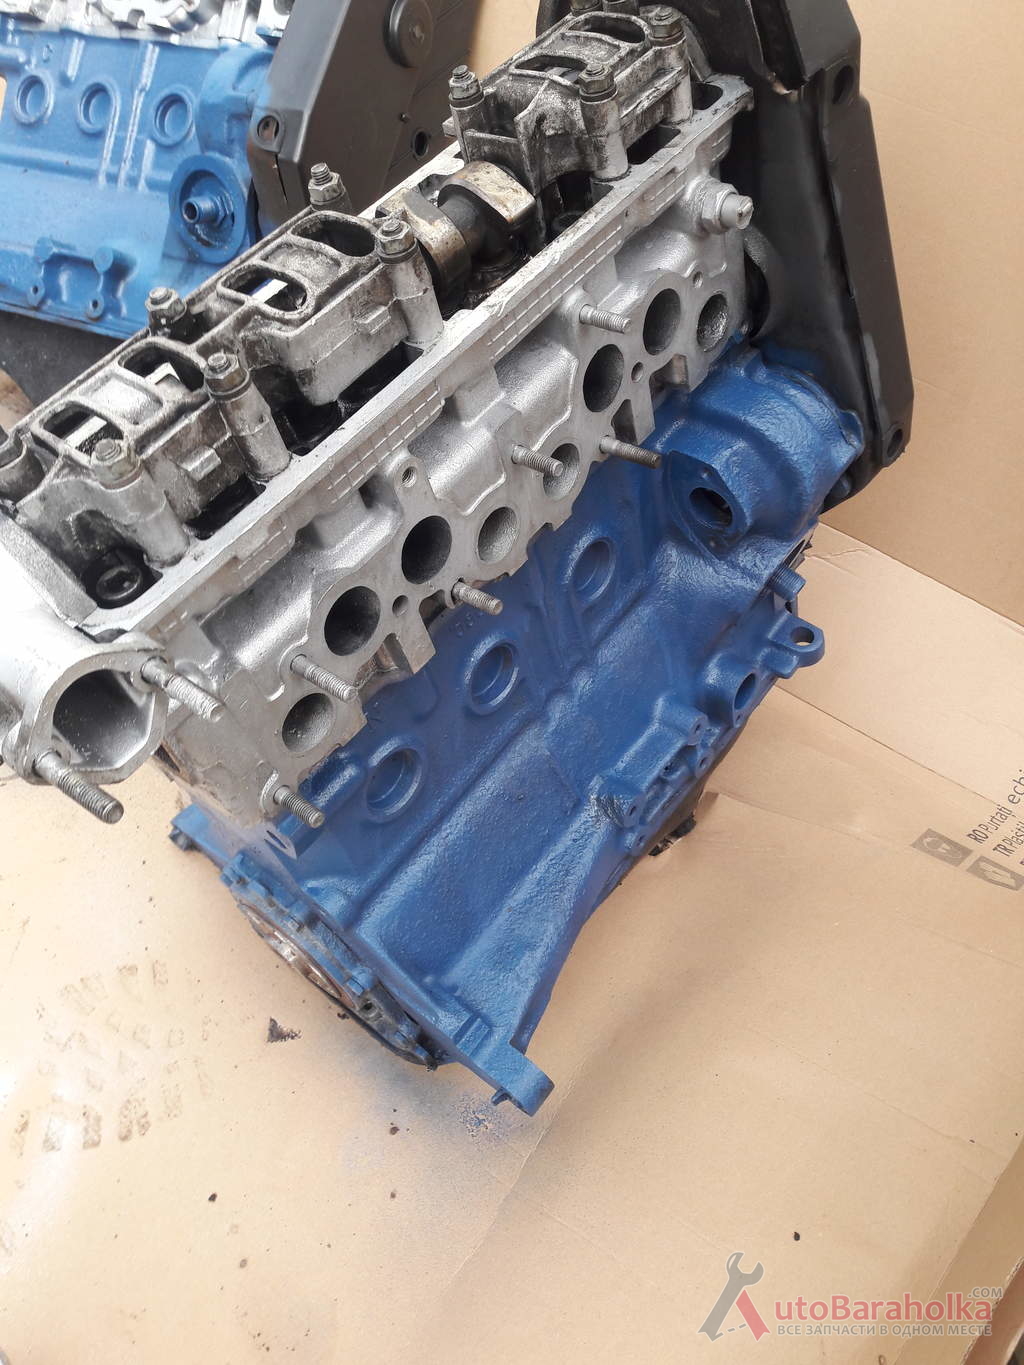 Продам Двигатель Мотор ВАЗ лада 2108 21083 2113 2111 1118 21124 21126 в отличном состоянии. Гарантия Киев